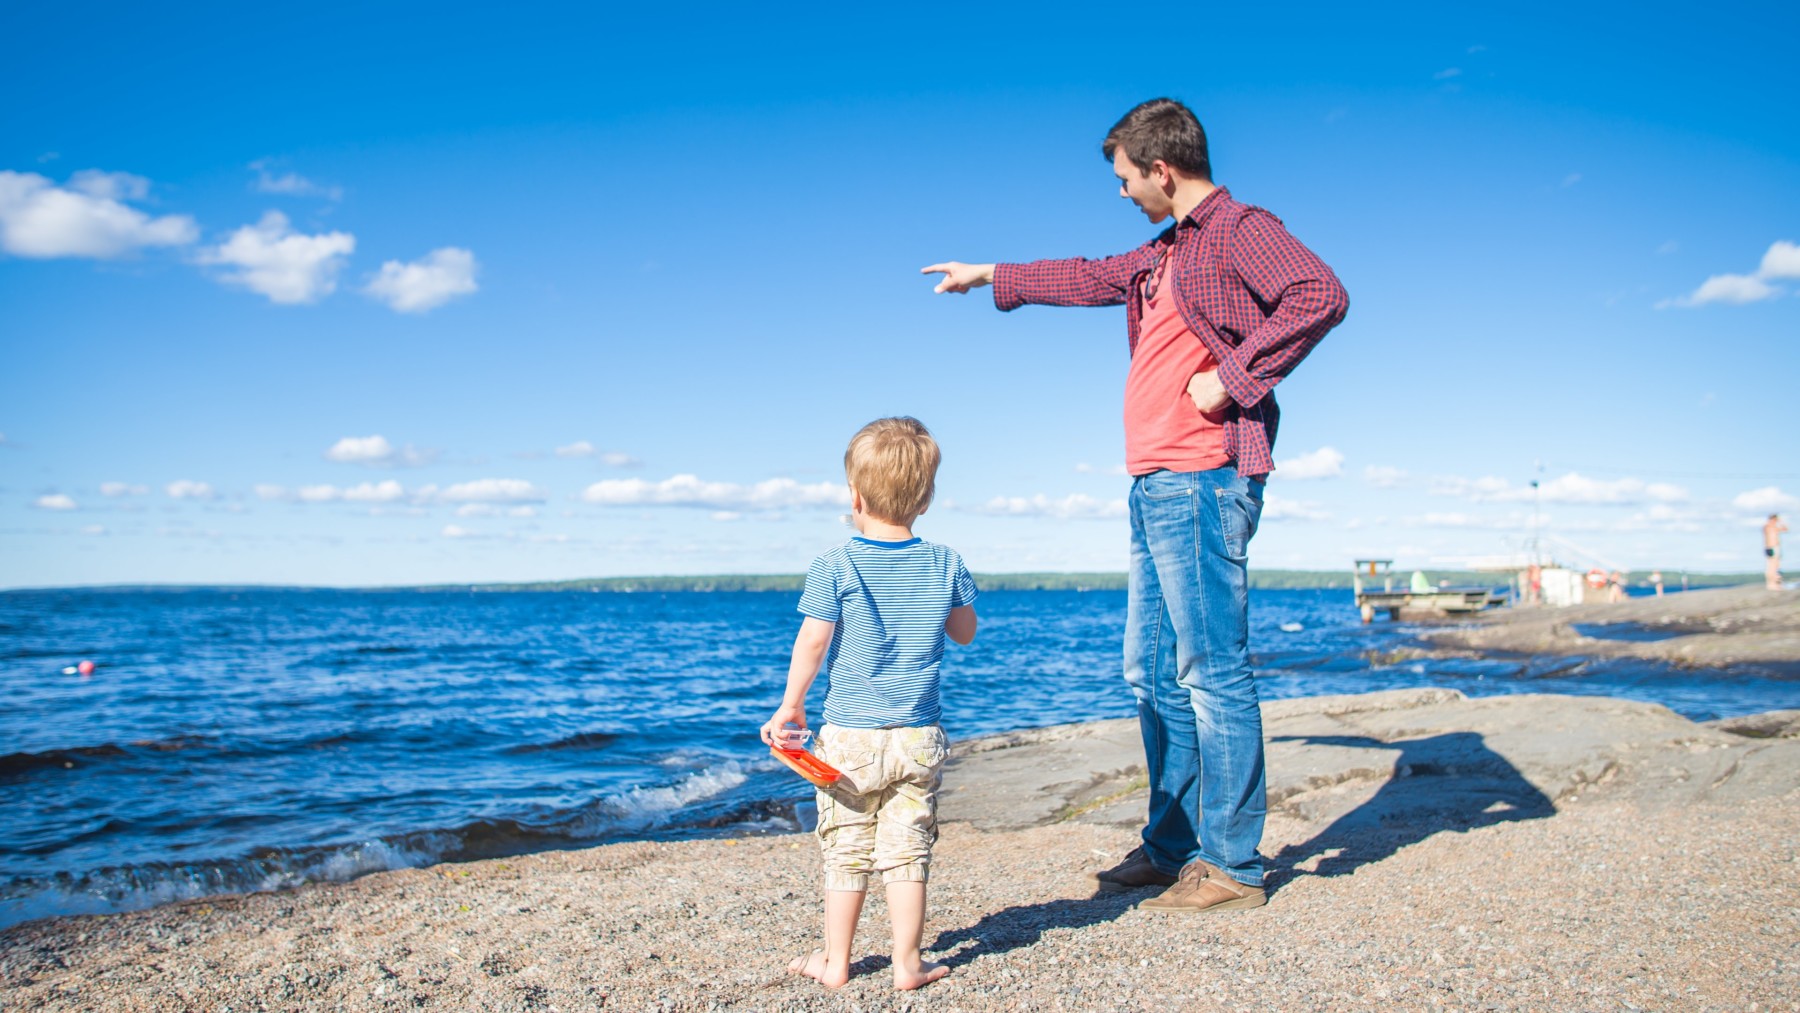 Un hombre señala el horizonte a la orilla de un lago, mientras un niño mira en la misma dirección.